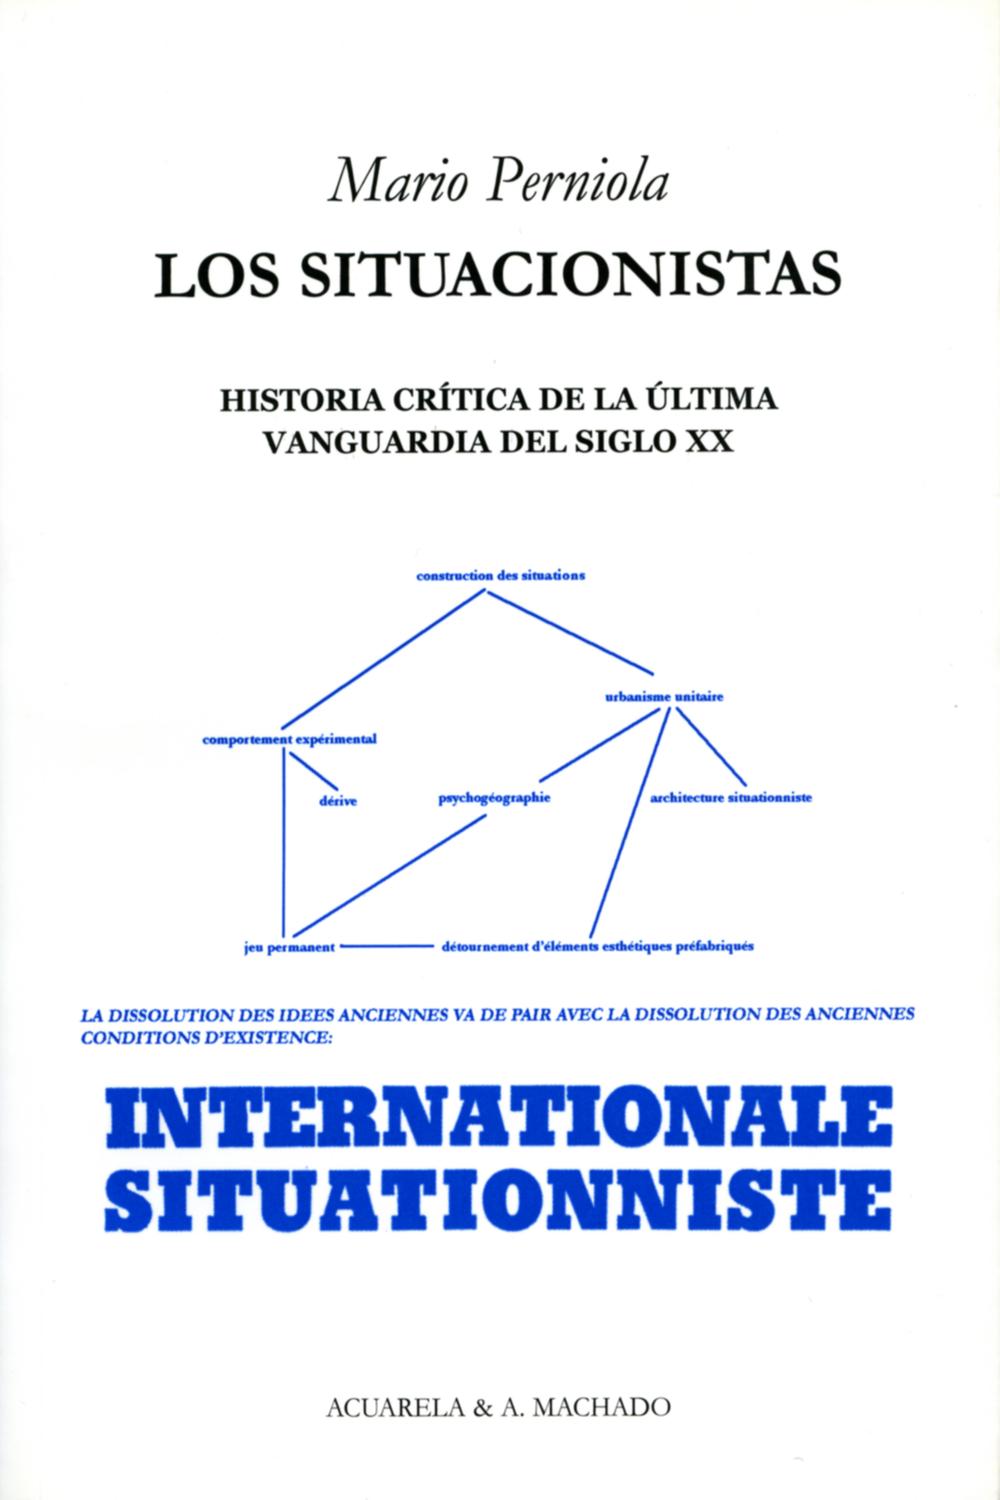 Los situacionistas - Mario Perniola, Álvaro García-Ormaechea